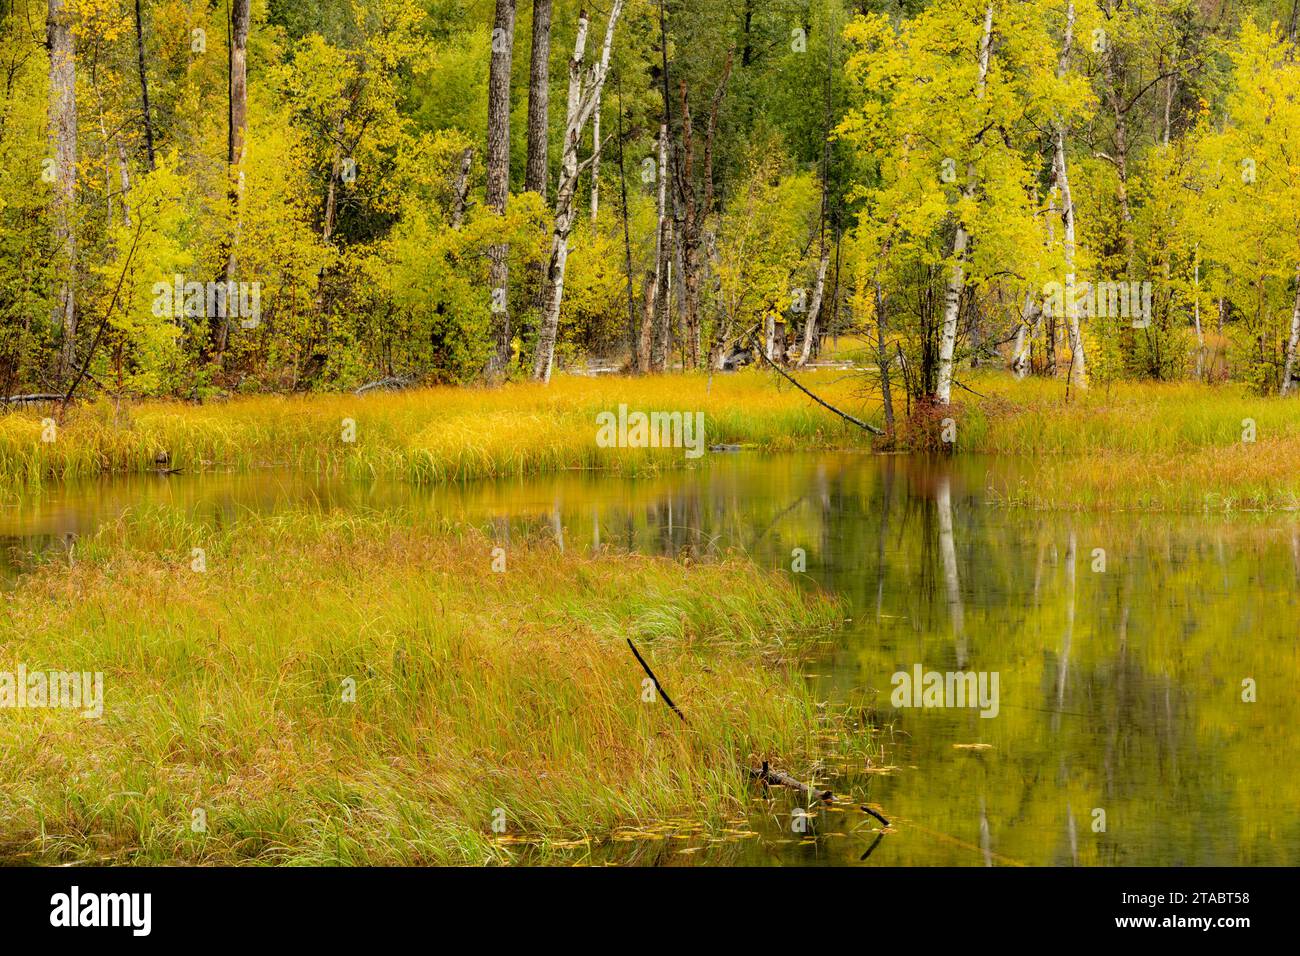 Pond in autumn, Alaska Stock Photo